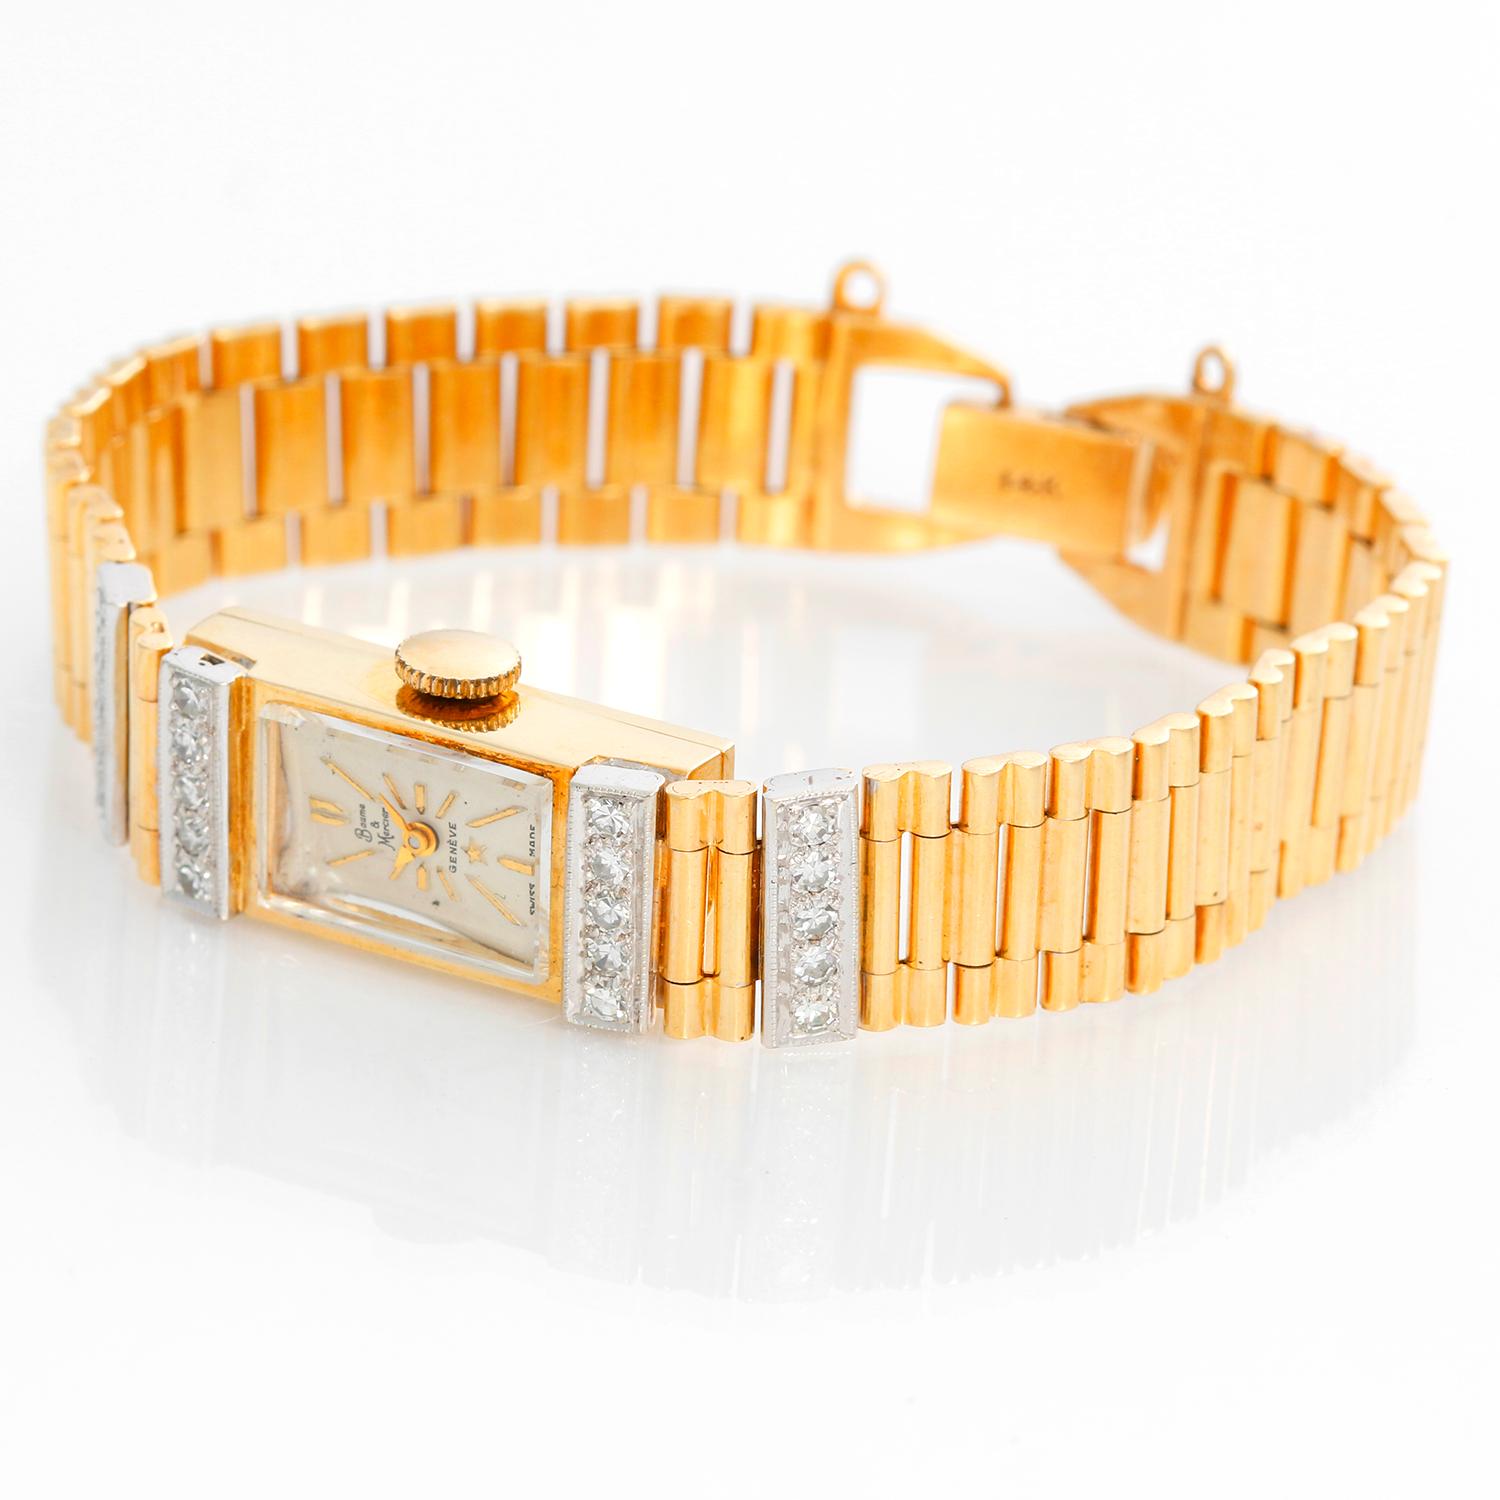 Baume & Mercier Damen 14k Gelbgold & Diamant Uhr -  Handaufzug; Uhrwerk mit 17 Juwelen. Gehäuse aus 14 Karat Gelbgold, mit 2 Stegen mit je 5 Diamanten, gefasst in Weißgold, auf beiden Seiten (11m x 22mm). Elfenbeinfarbenes Zifferblatt mit goldenen